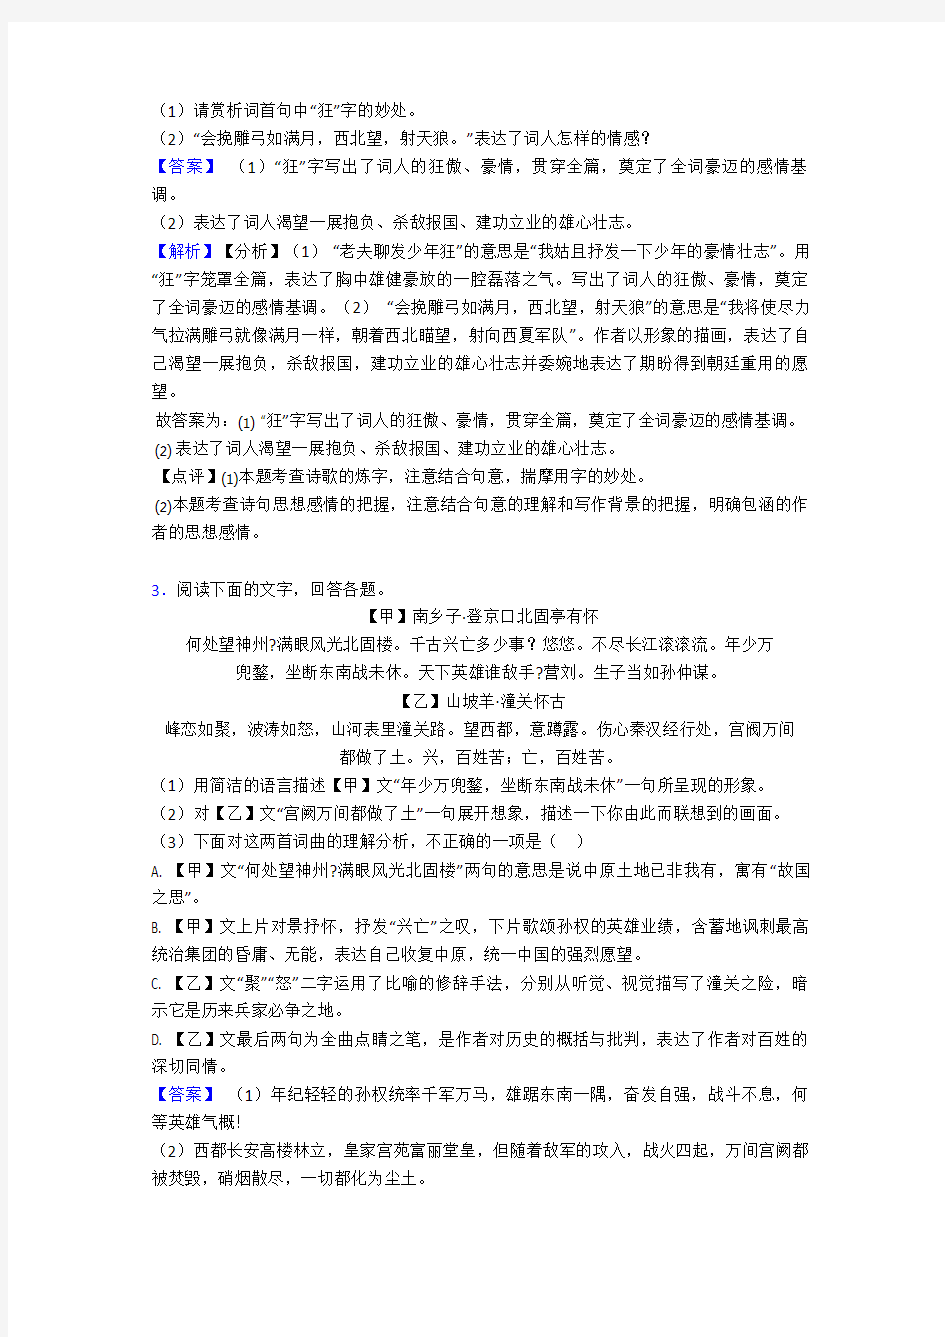 初中语文诗歌鉴赏+文言文阅读常见题型及答题技巧及练习题(含答案) (28)